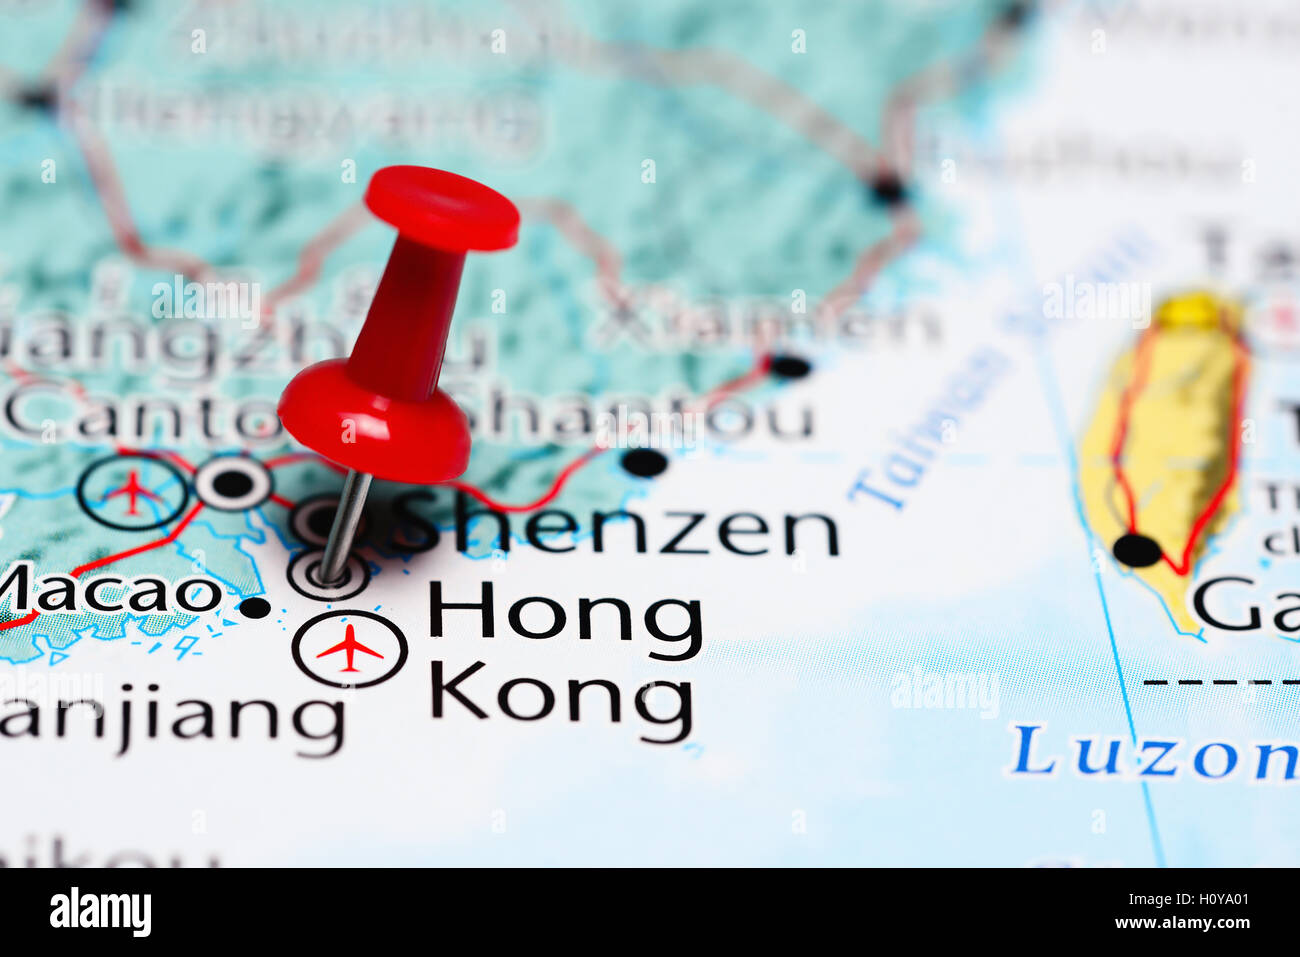 Hong Kong pinned on a map of China Stock Photo